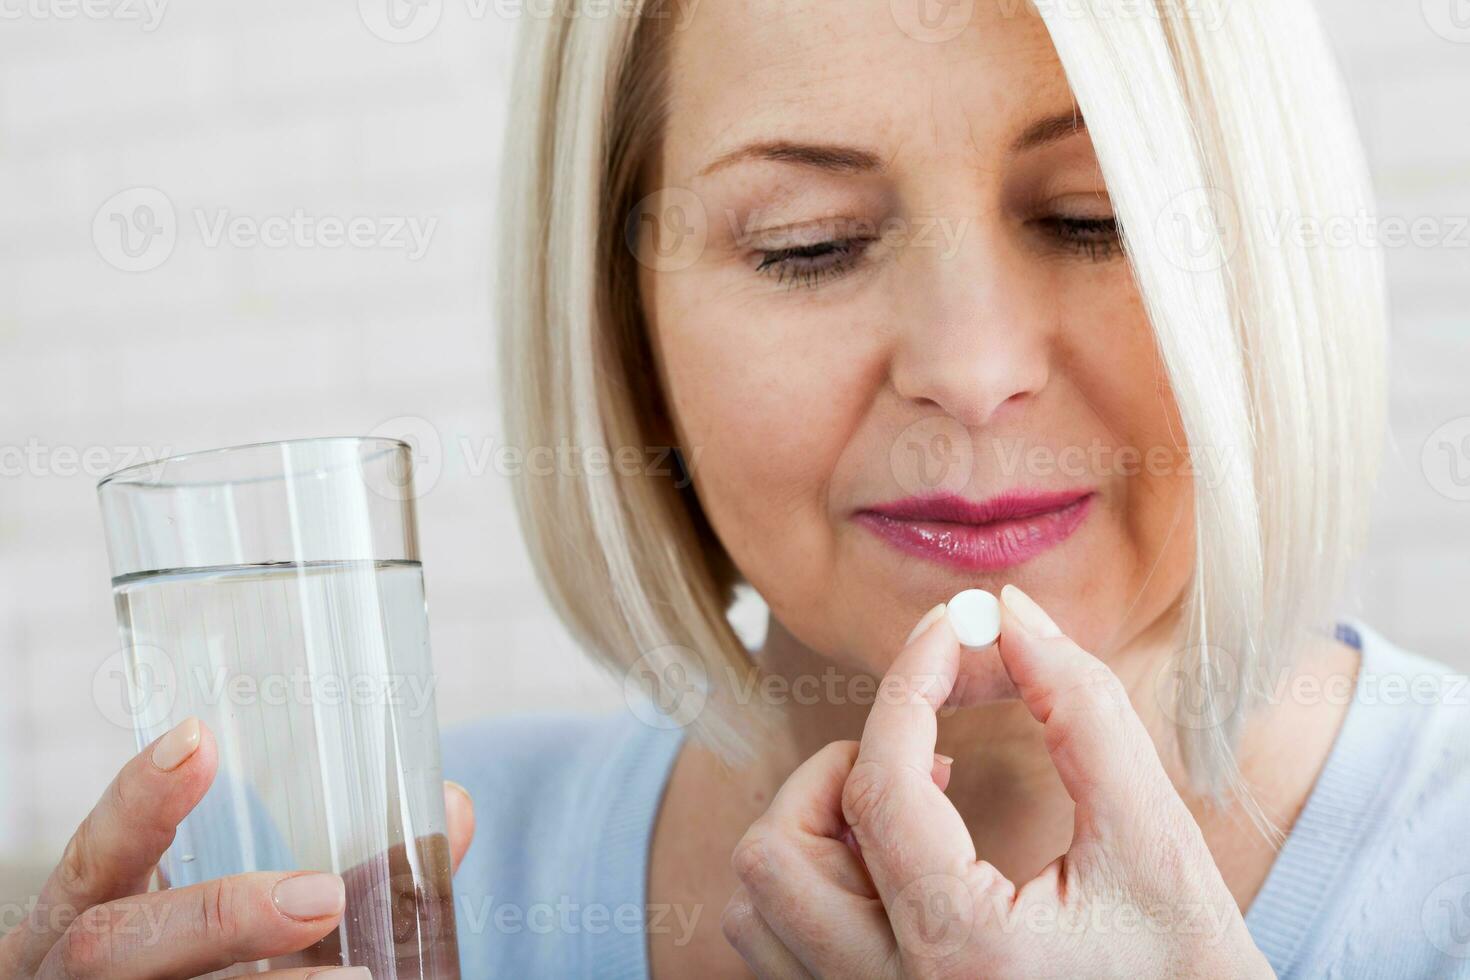 tveksam sjuk sjuk mitten kvinna innehav piller och glas av vatten tar smärtstillande medicin läkemedel till lindra huvudvärk smärta, orolig handla om sida effekter av antidepressivt medel eller nödsituation preventivmedel meds foto